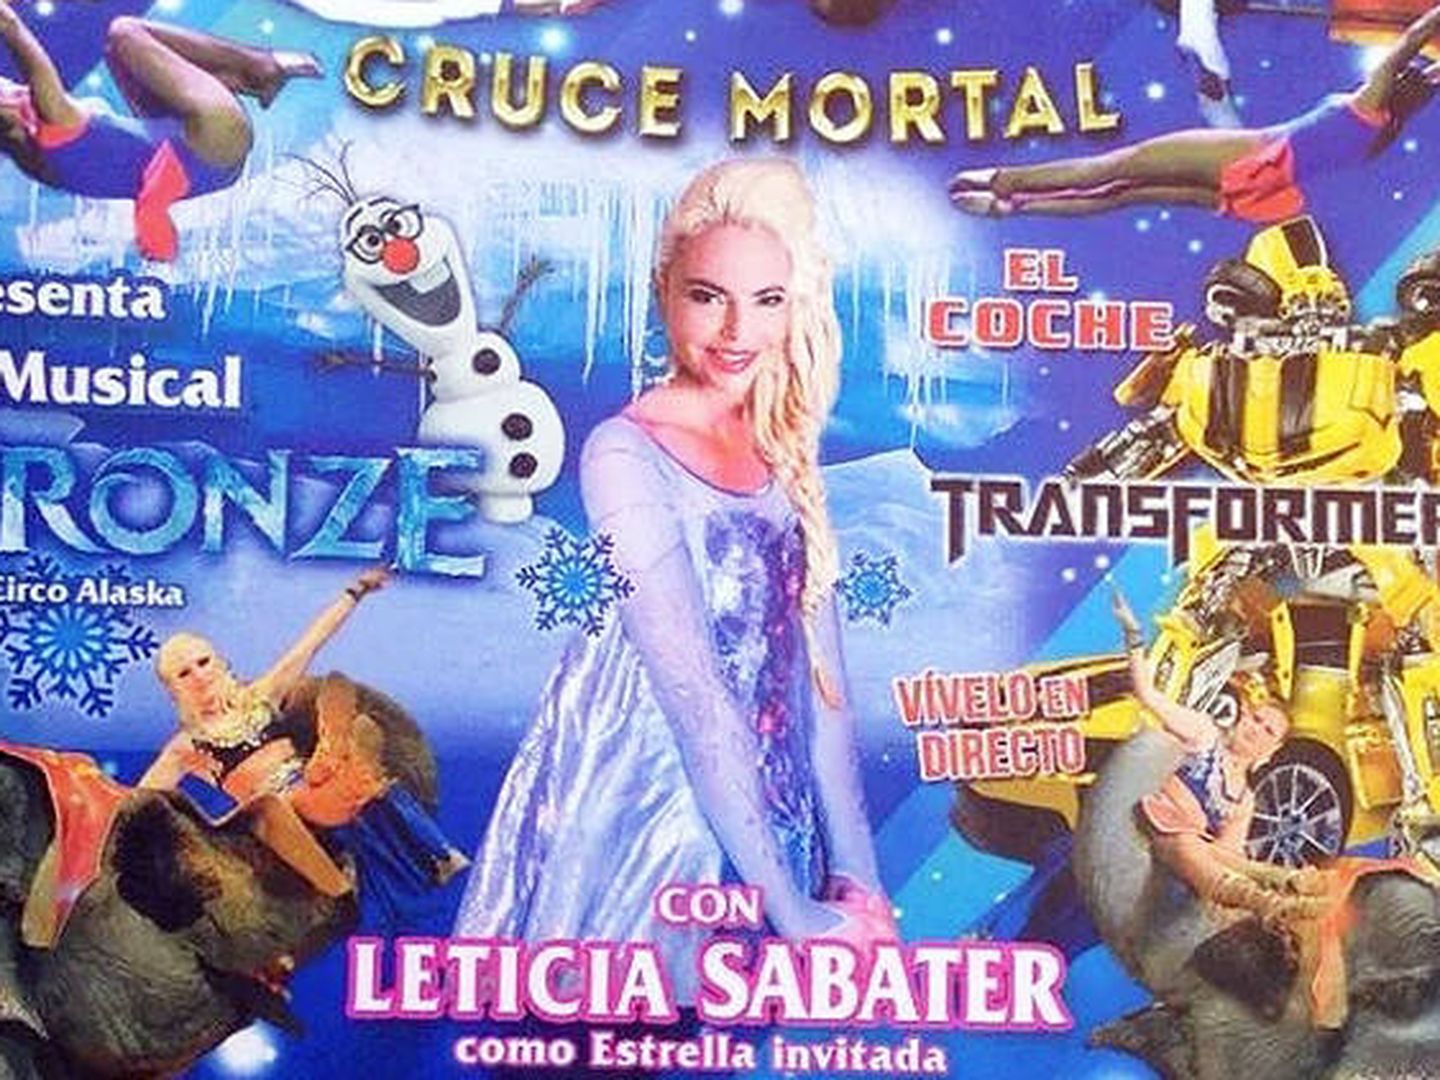 Leticia Sabater en 'Fronze'.